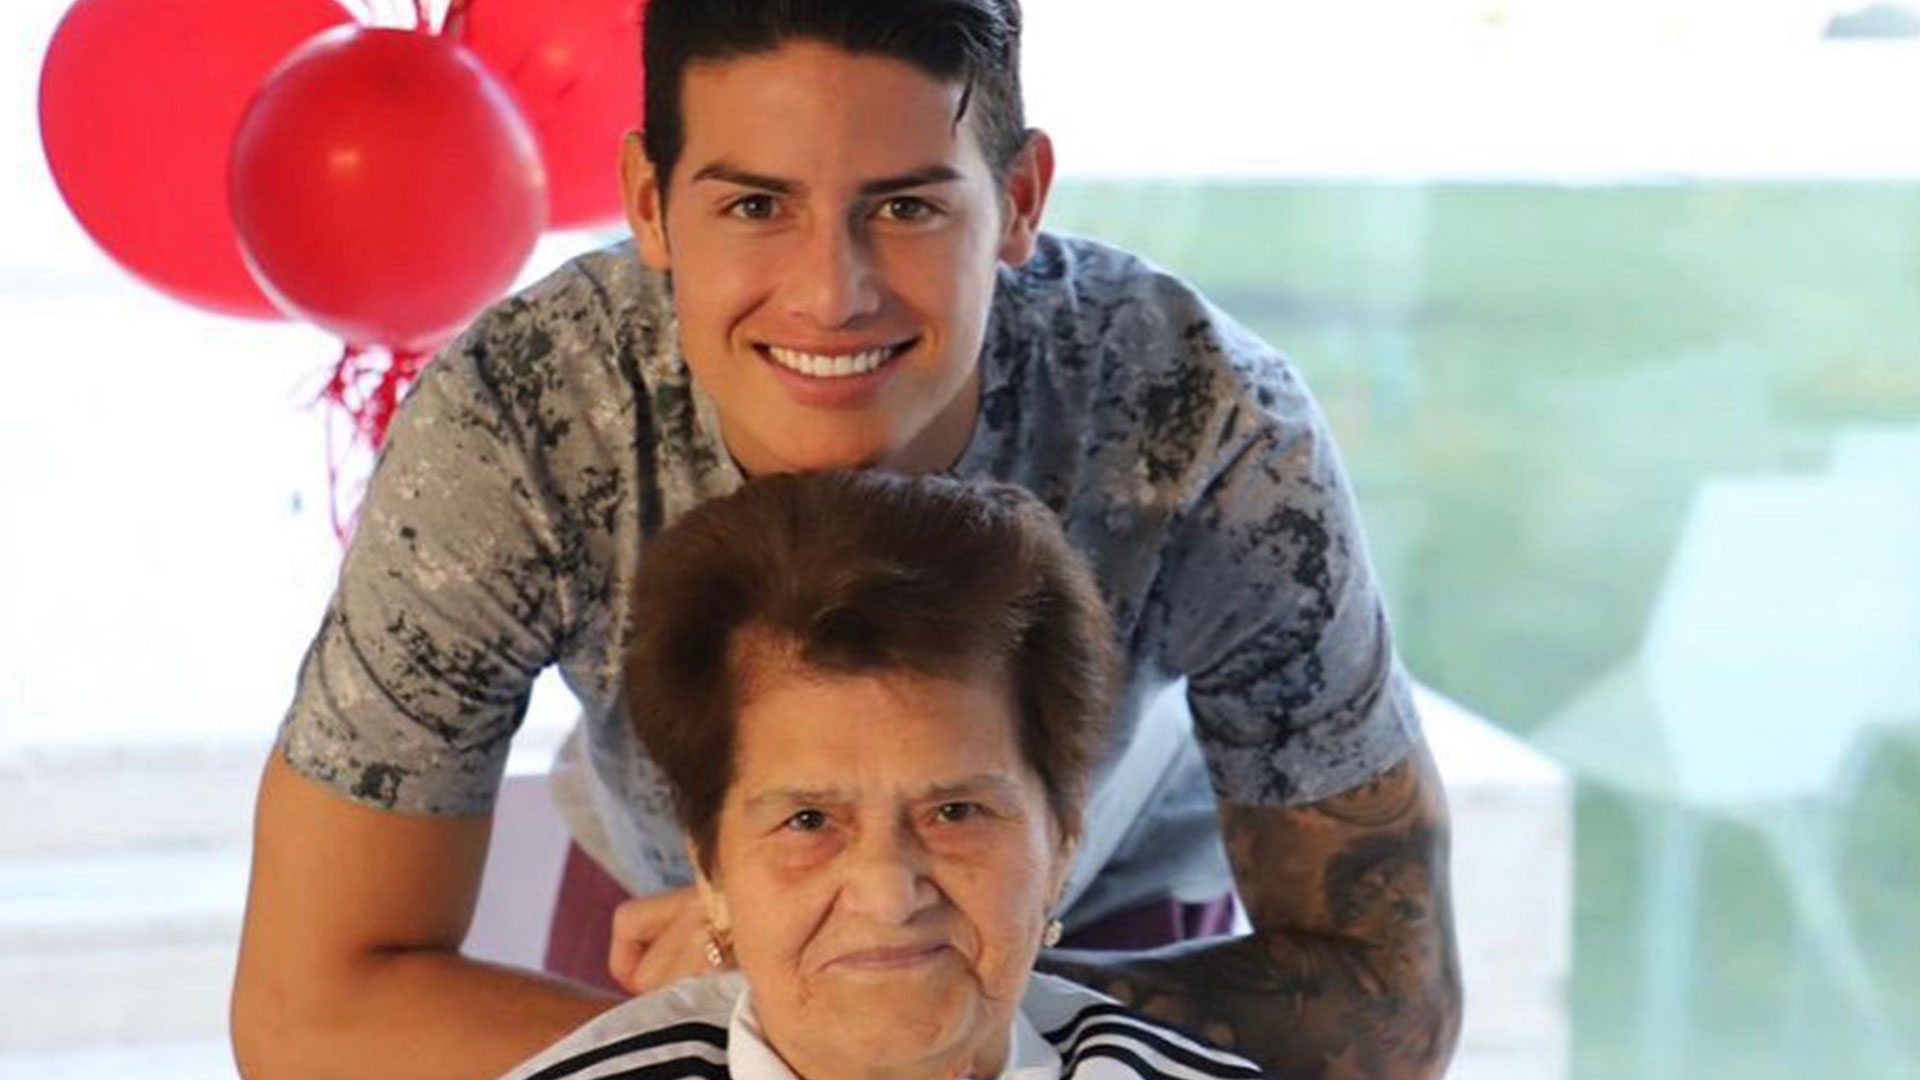 El jugador de la Selección de Colombia James Rodríguez dedicó un tierno mensaje a su abuelita en su cuenta de Instagram. (Foto Prensa Libre: James Rodríguez-Instagram)